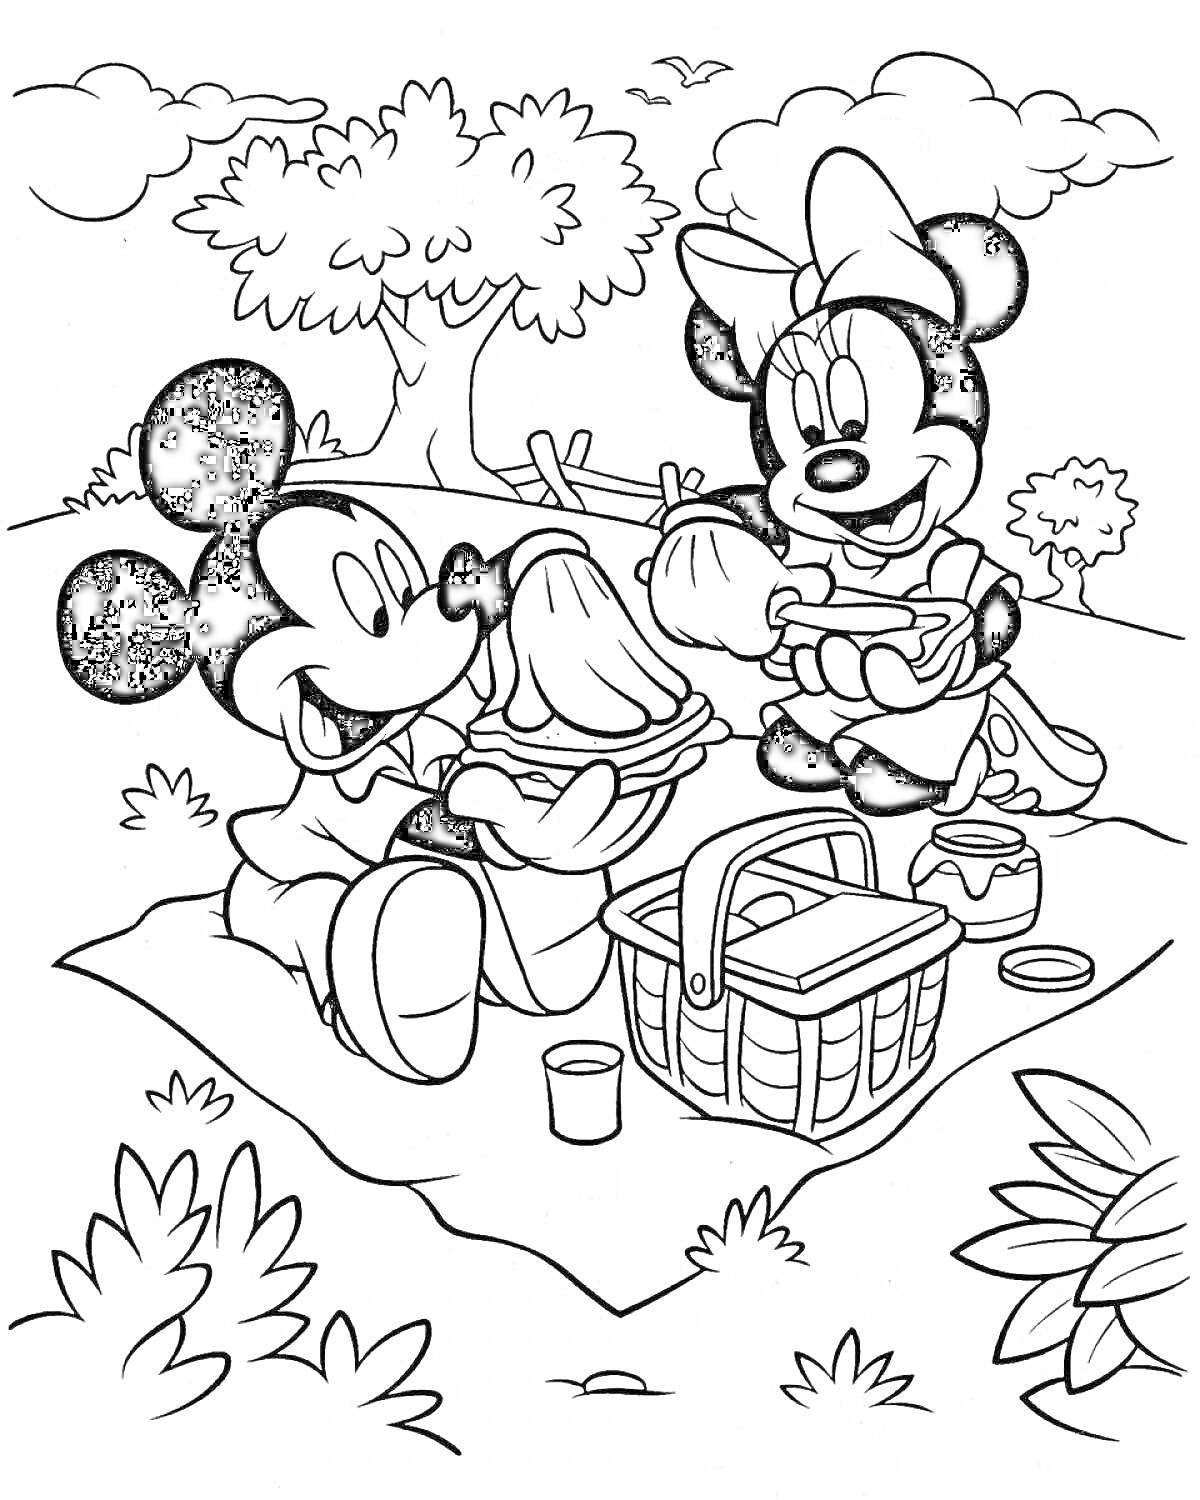 Раскраска Микки Маус и Минни Маус на пикнике, сандвичи, корзина, пейзаж